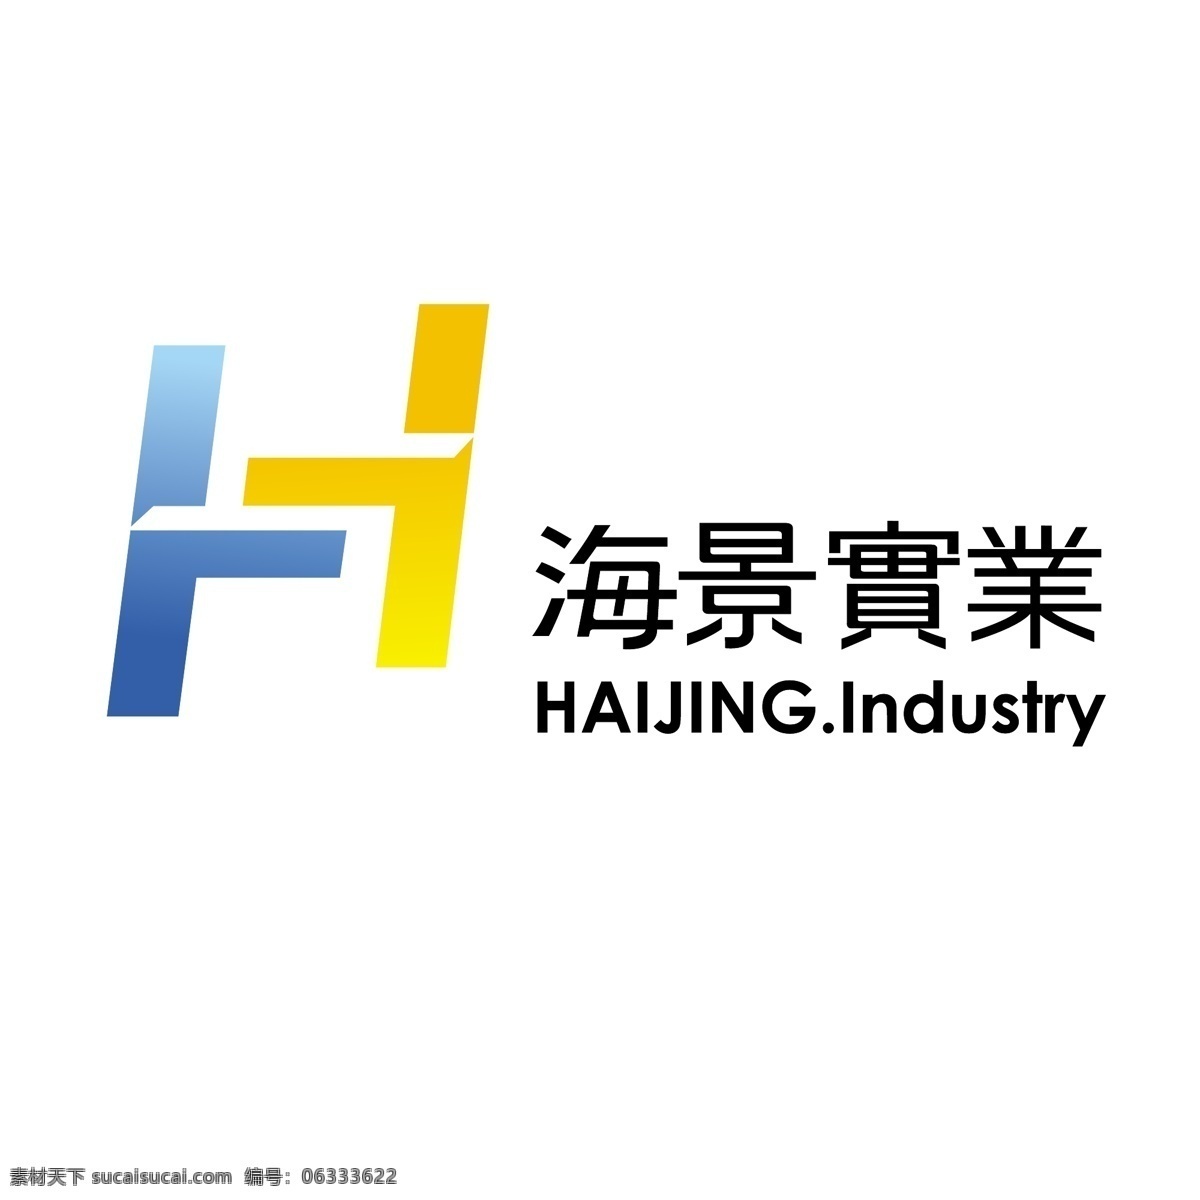 海景 实业 logo 简约logo 免费 图形设计 文字logo 蓝 黄色 矢量图